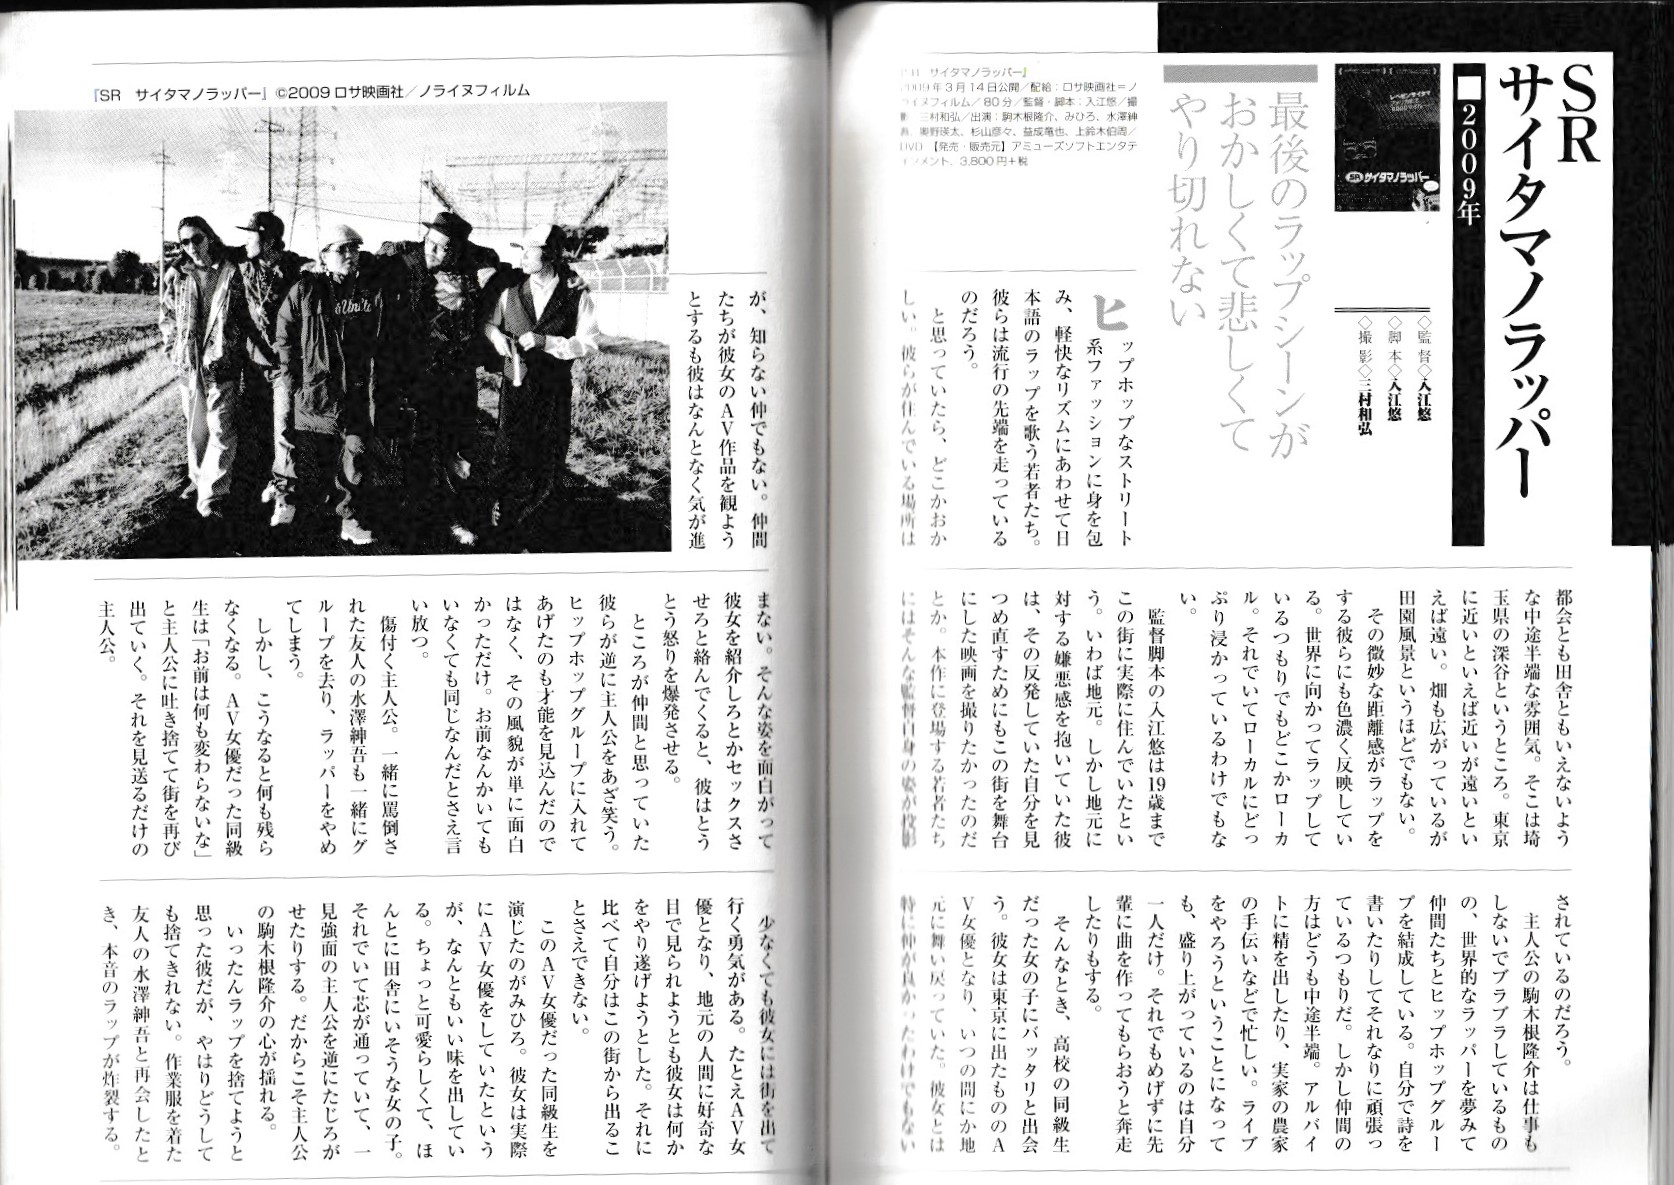 カルトムービー 本当に面白い日本映画 1981→2013画像